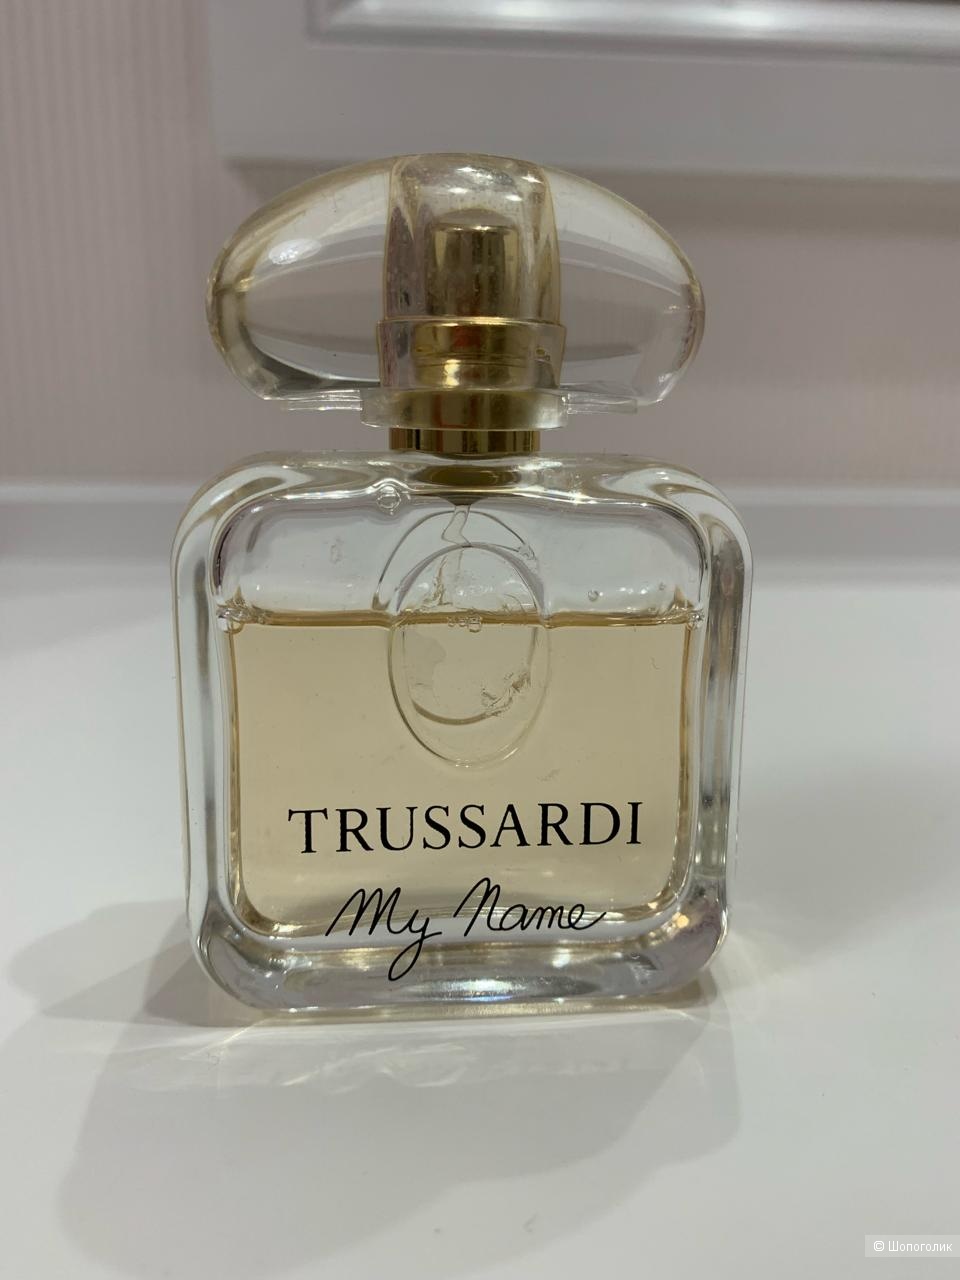 TRUSSARDI MY MAME парфюм остаток от 50 мл